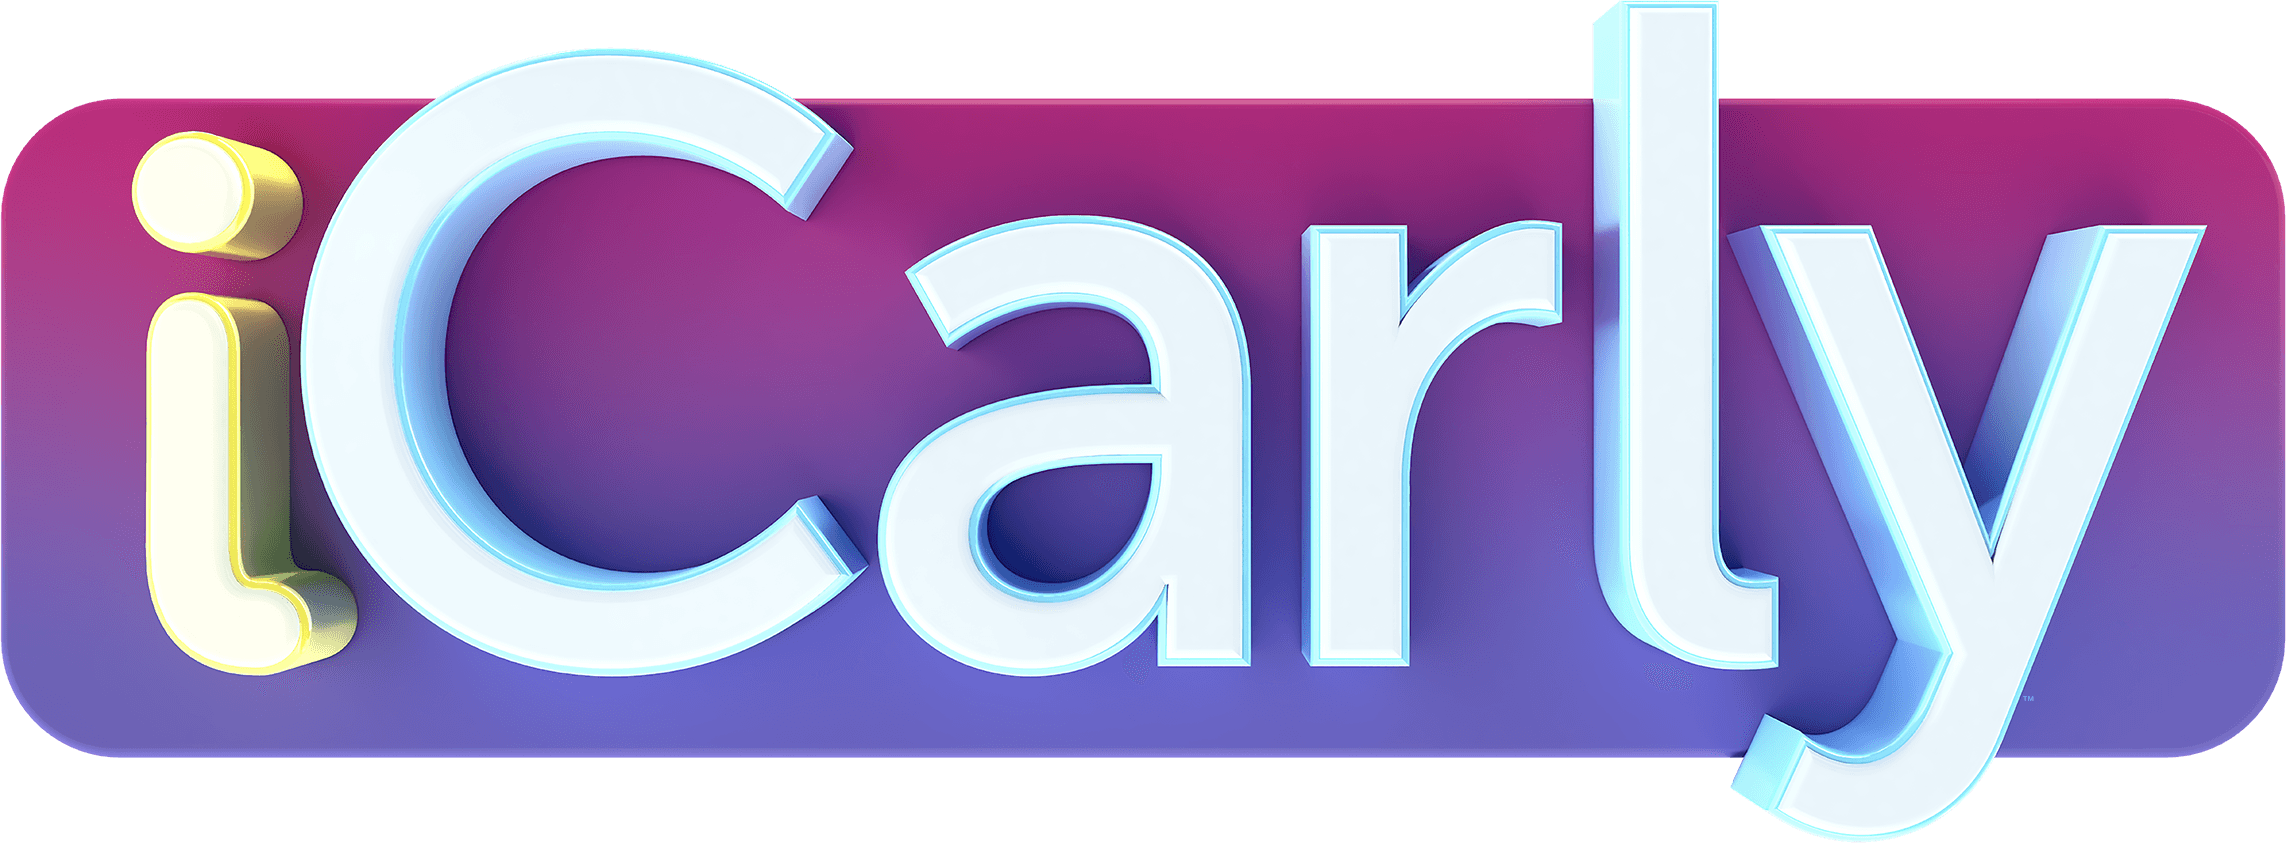 iCarly logo